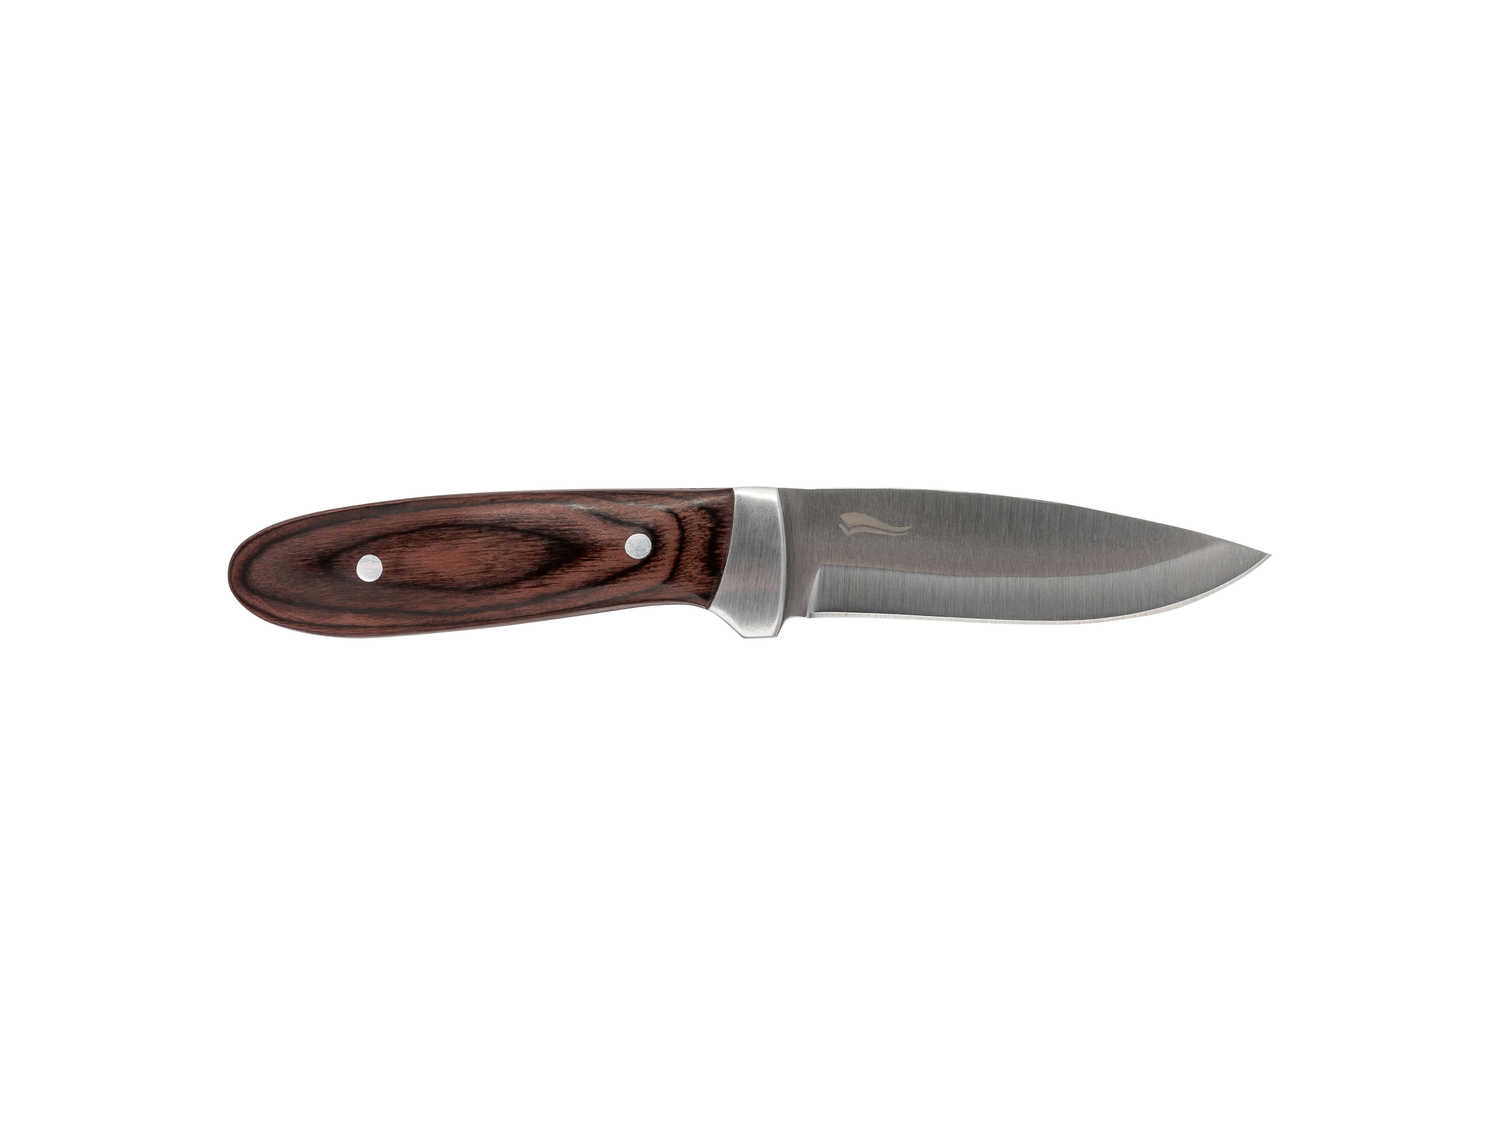 Coltello o coltellino tascabile Crivit, prezzo 5.99 &#8364; 

Caratteristiche

- ...